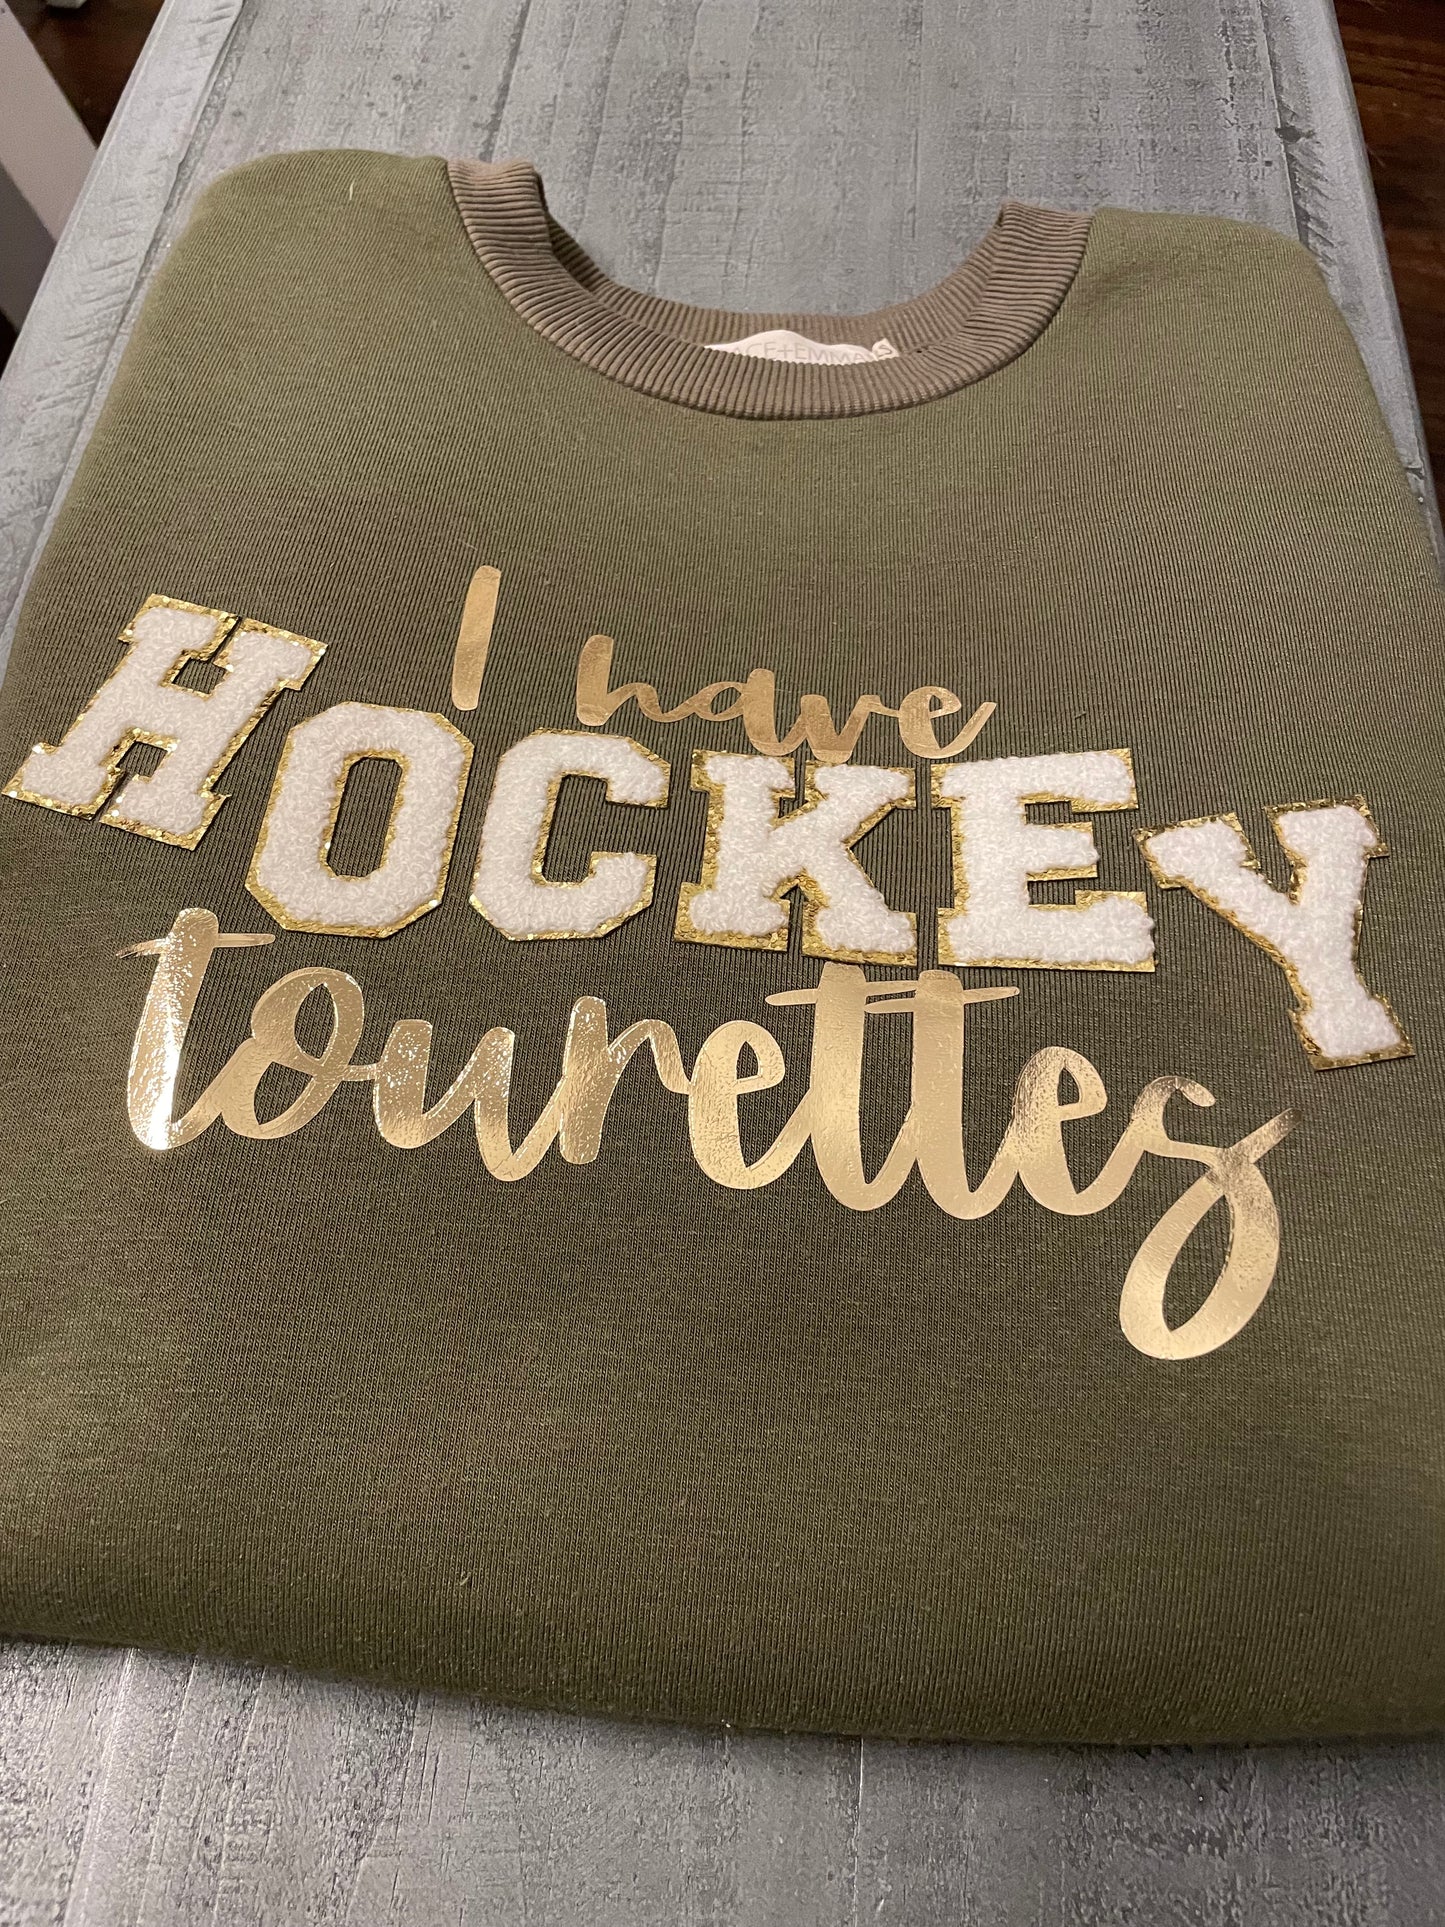 I have HOCKEY Tourettes Sweatshirt